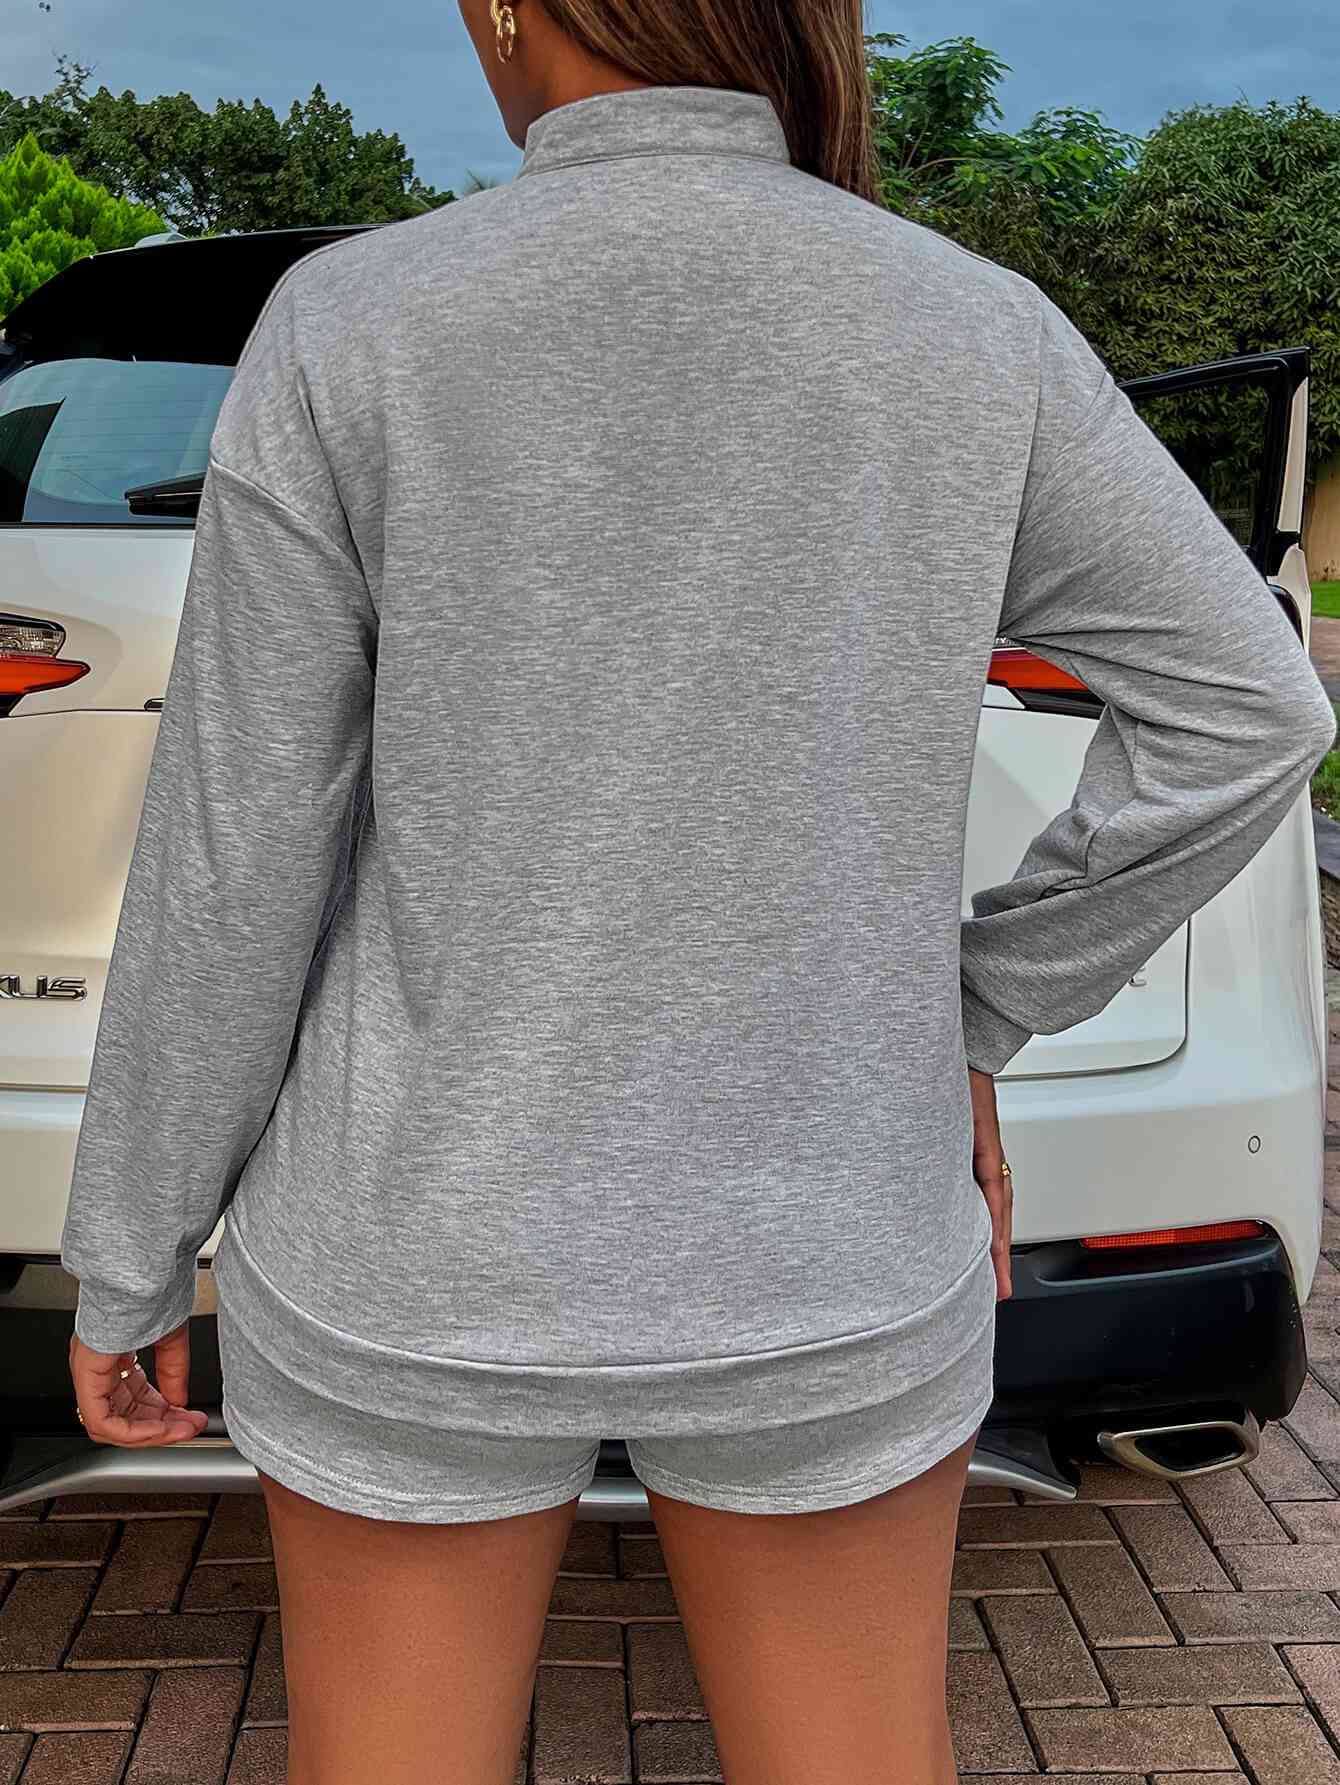 BE KIND Graphic Quarter-Zip Sweatshirt and Shorts Set | Sugarz Chique Boutique